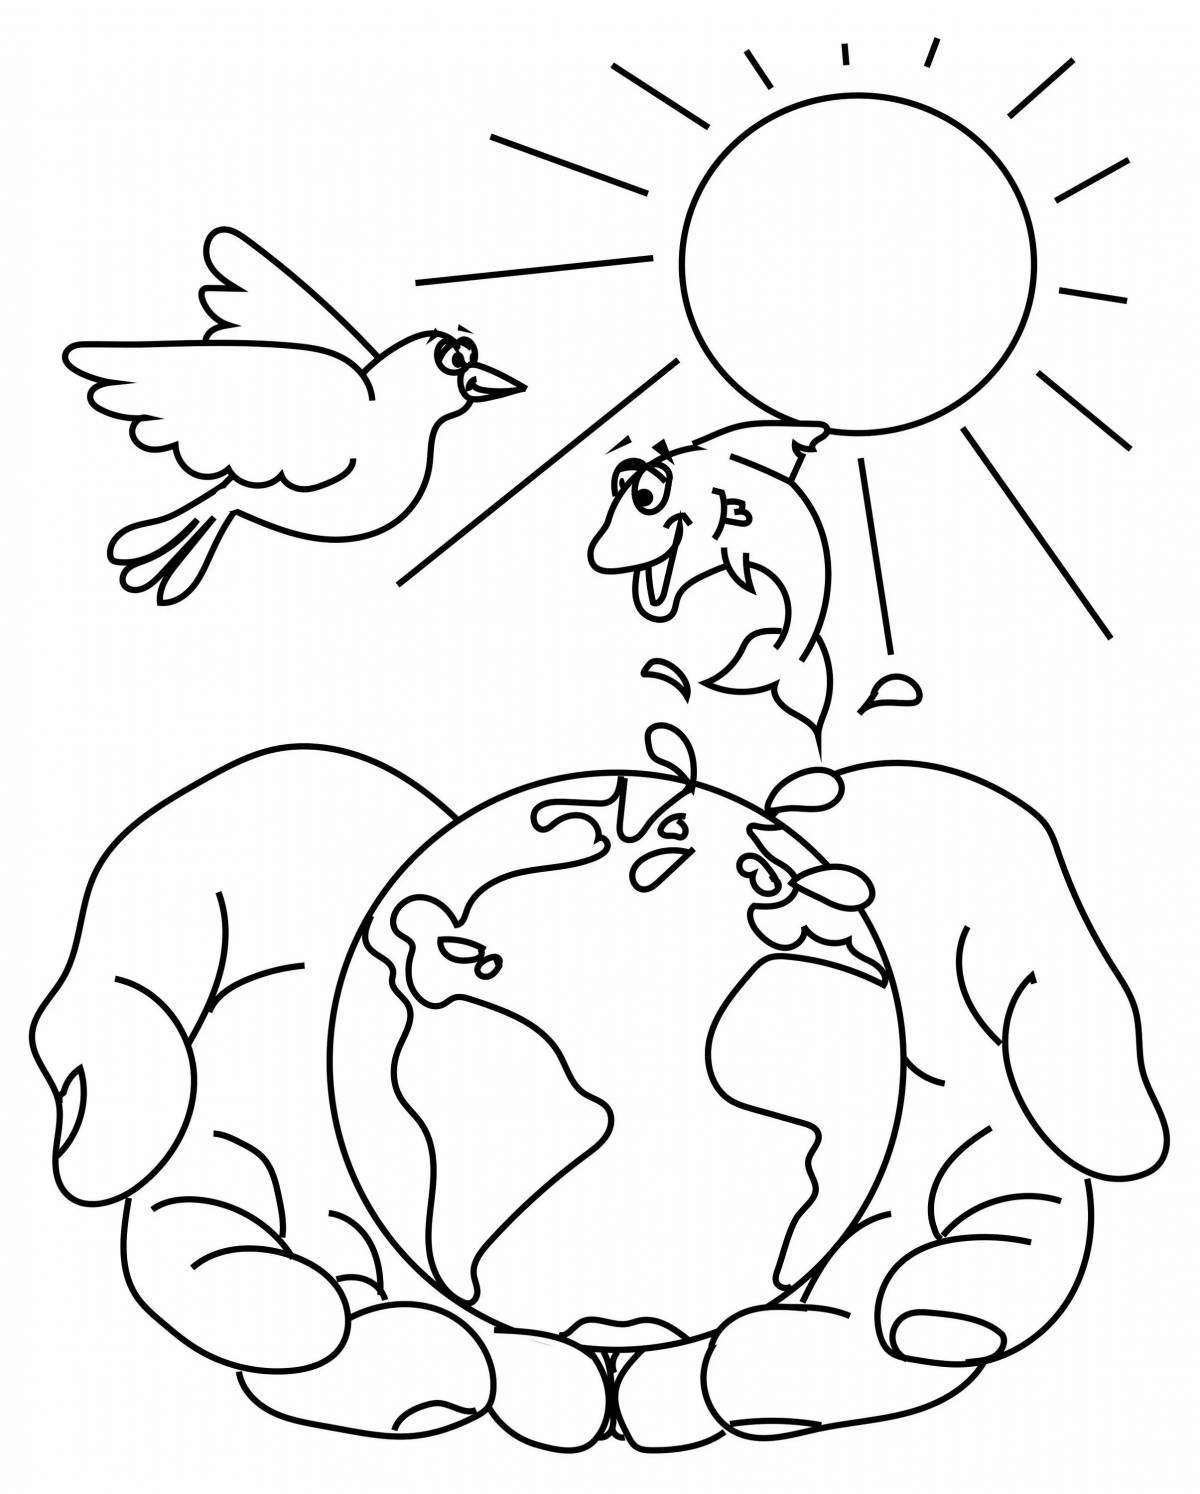 Конкурс рисунков «Мы за мир на планете!»